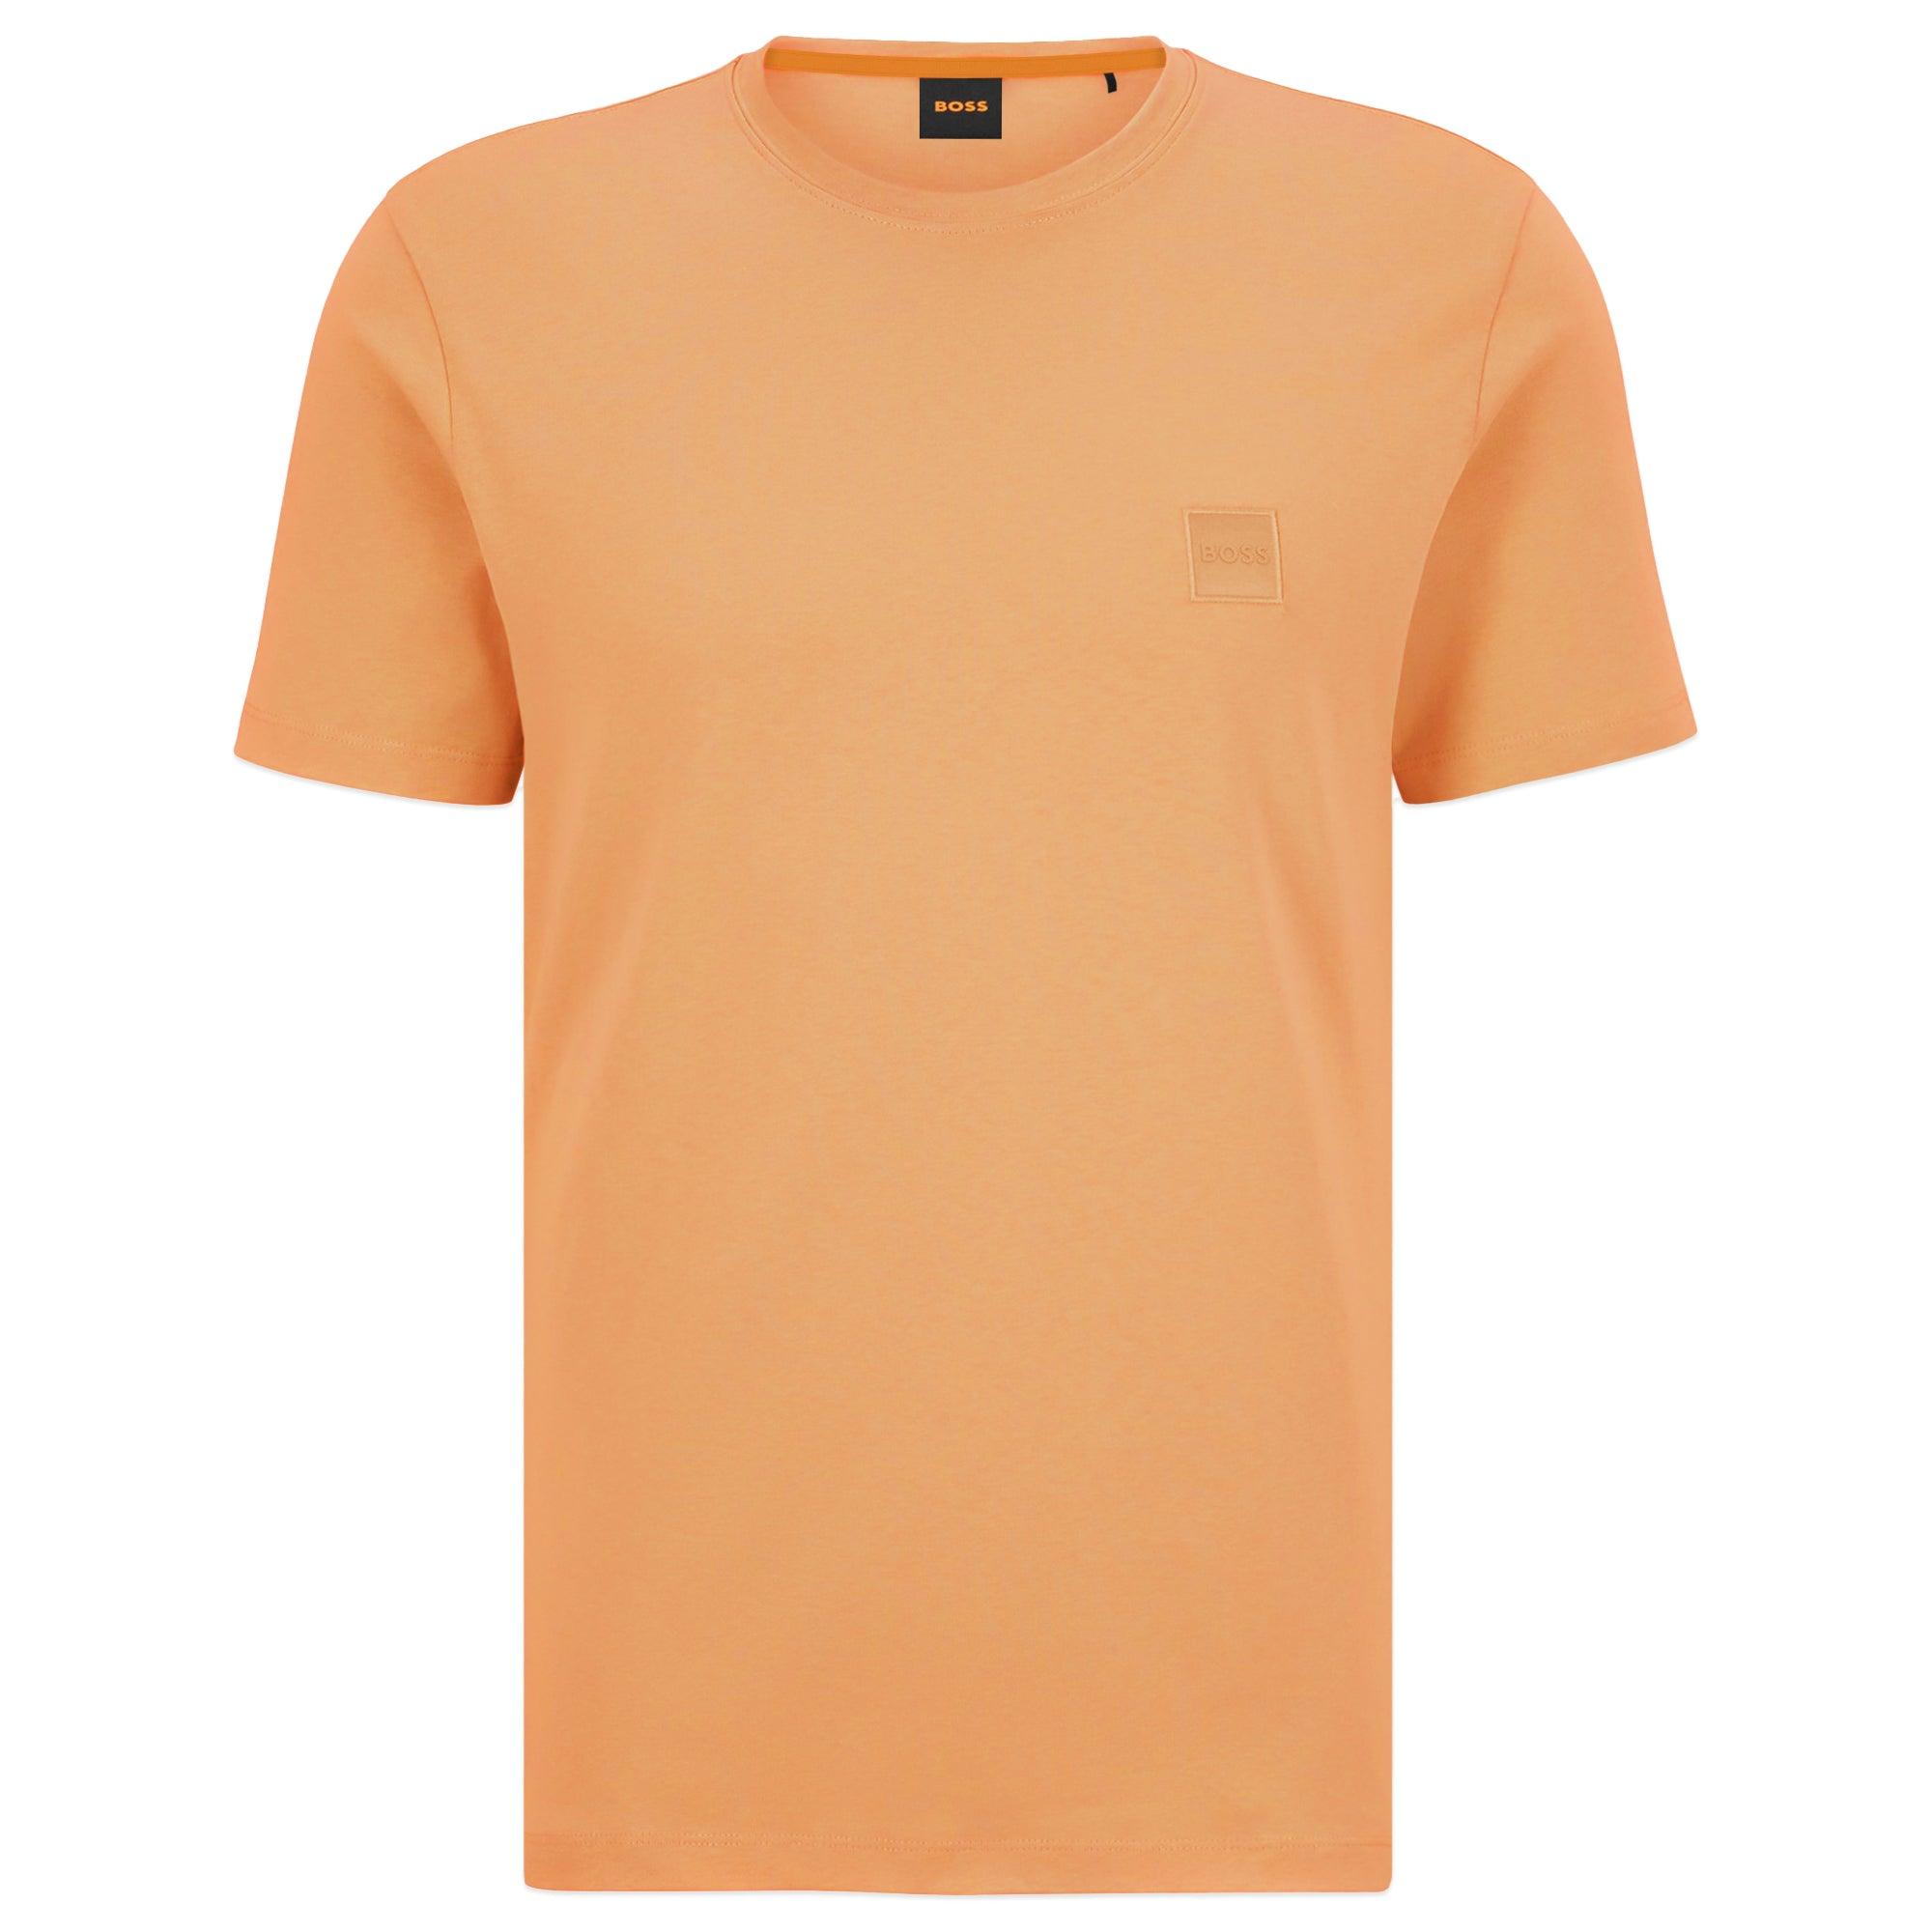 BOSS by HUGO BOSS Tales Orange T-shirt Lyst in Men for 